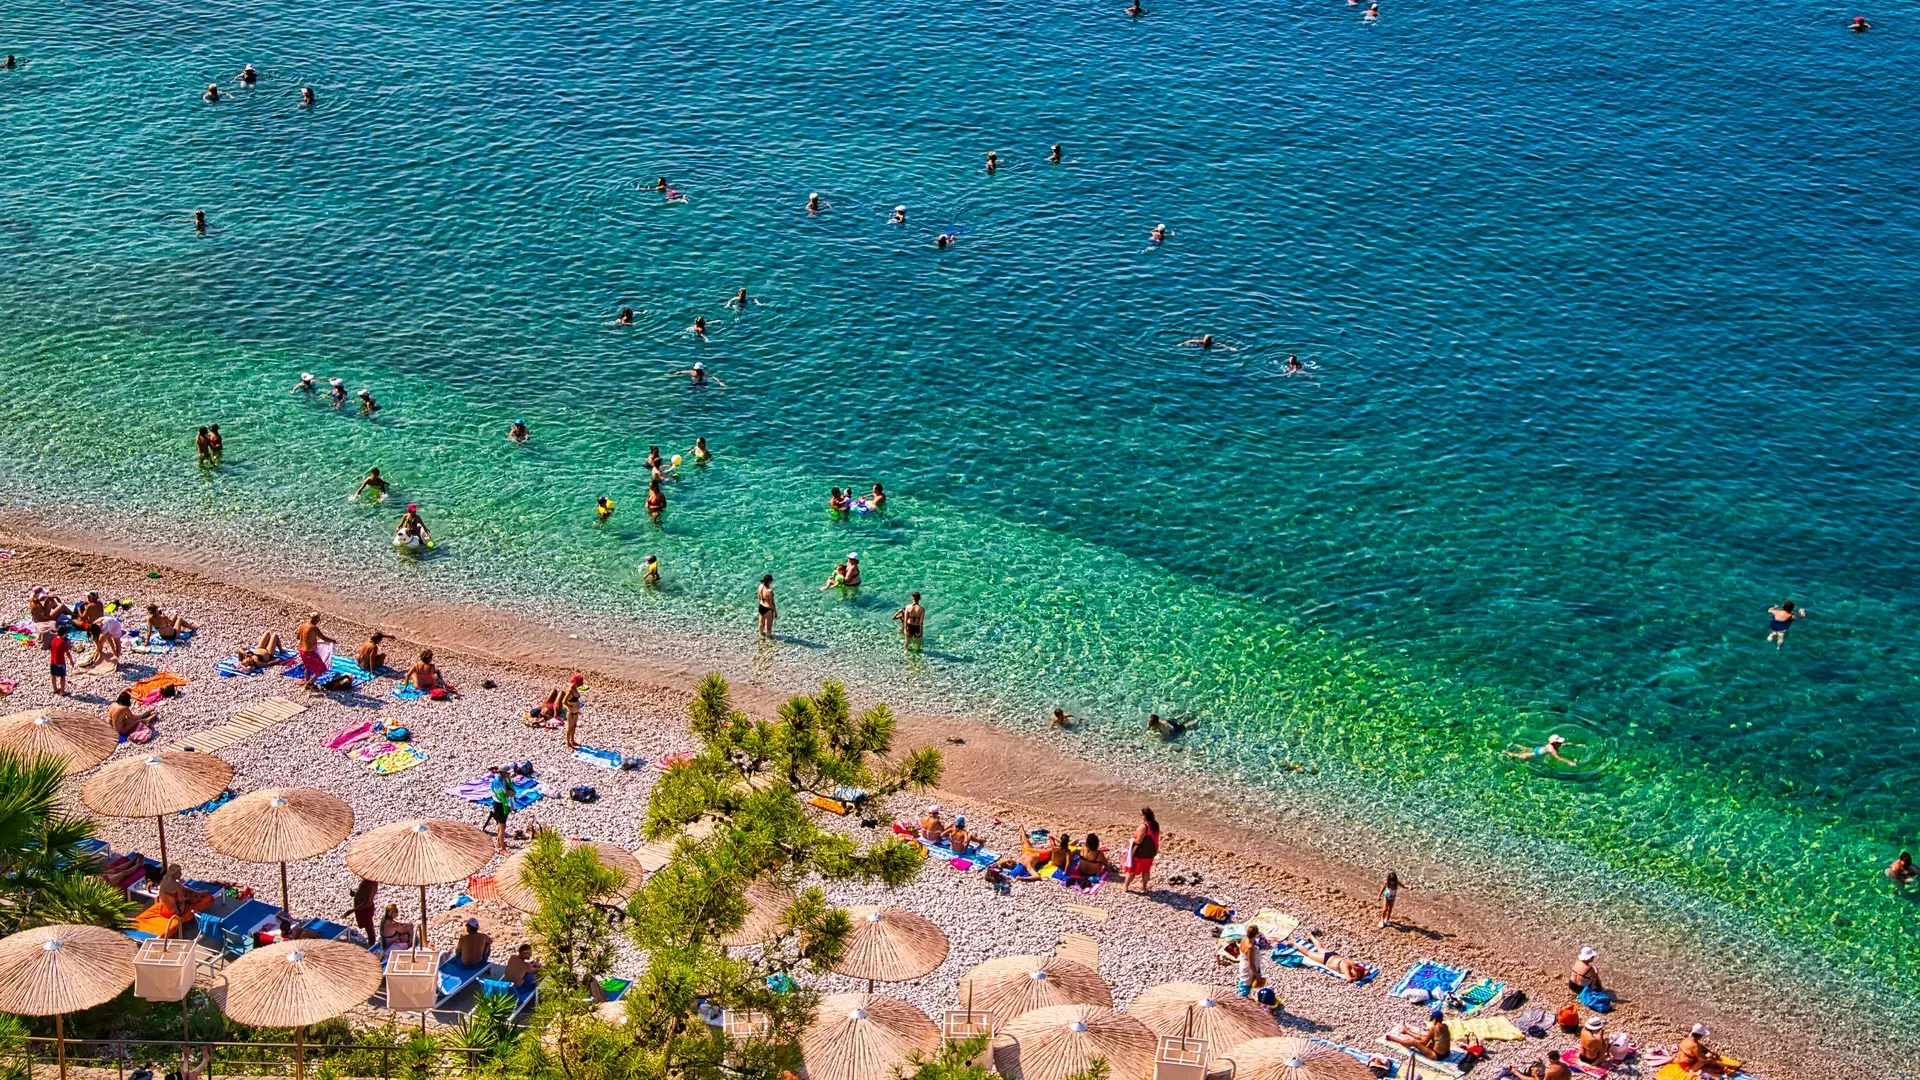 Ναύπλιο: 4 υπέροχες παραλίες για κοντινές αποδράσεις από την Αθήνα